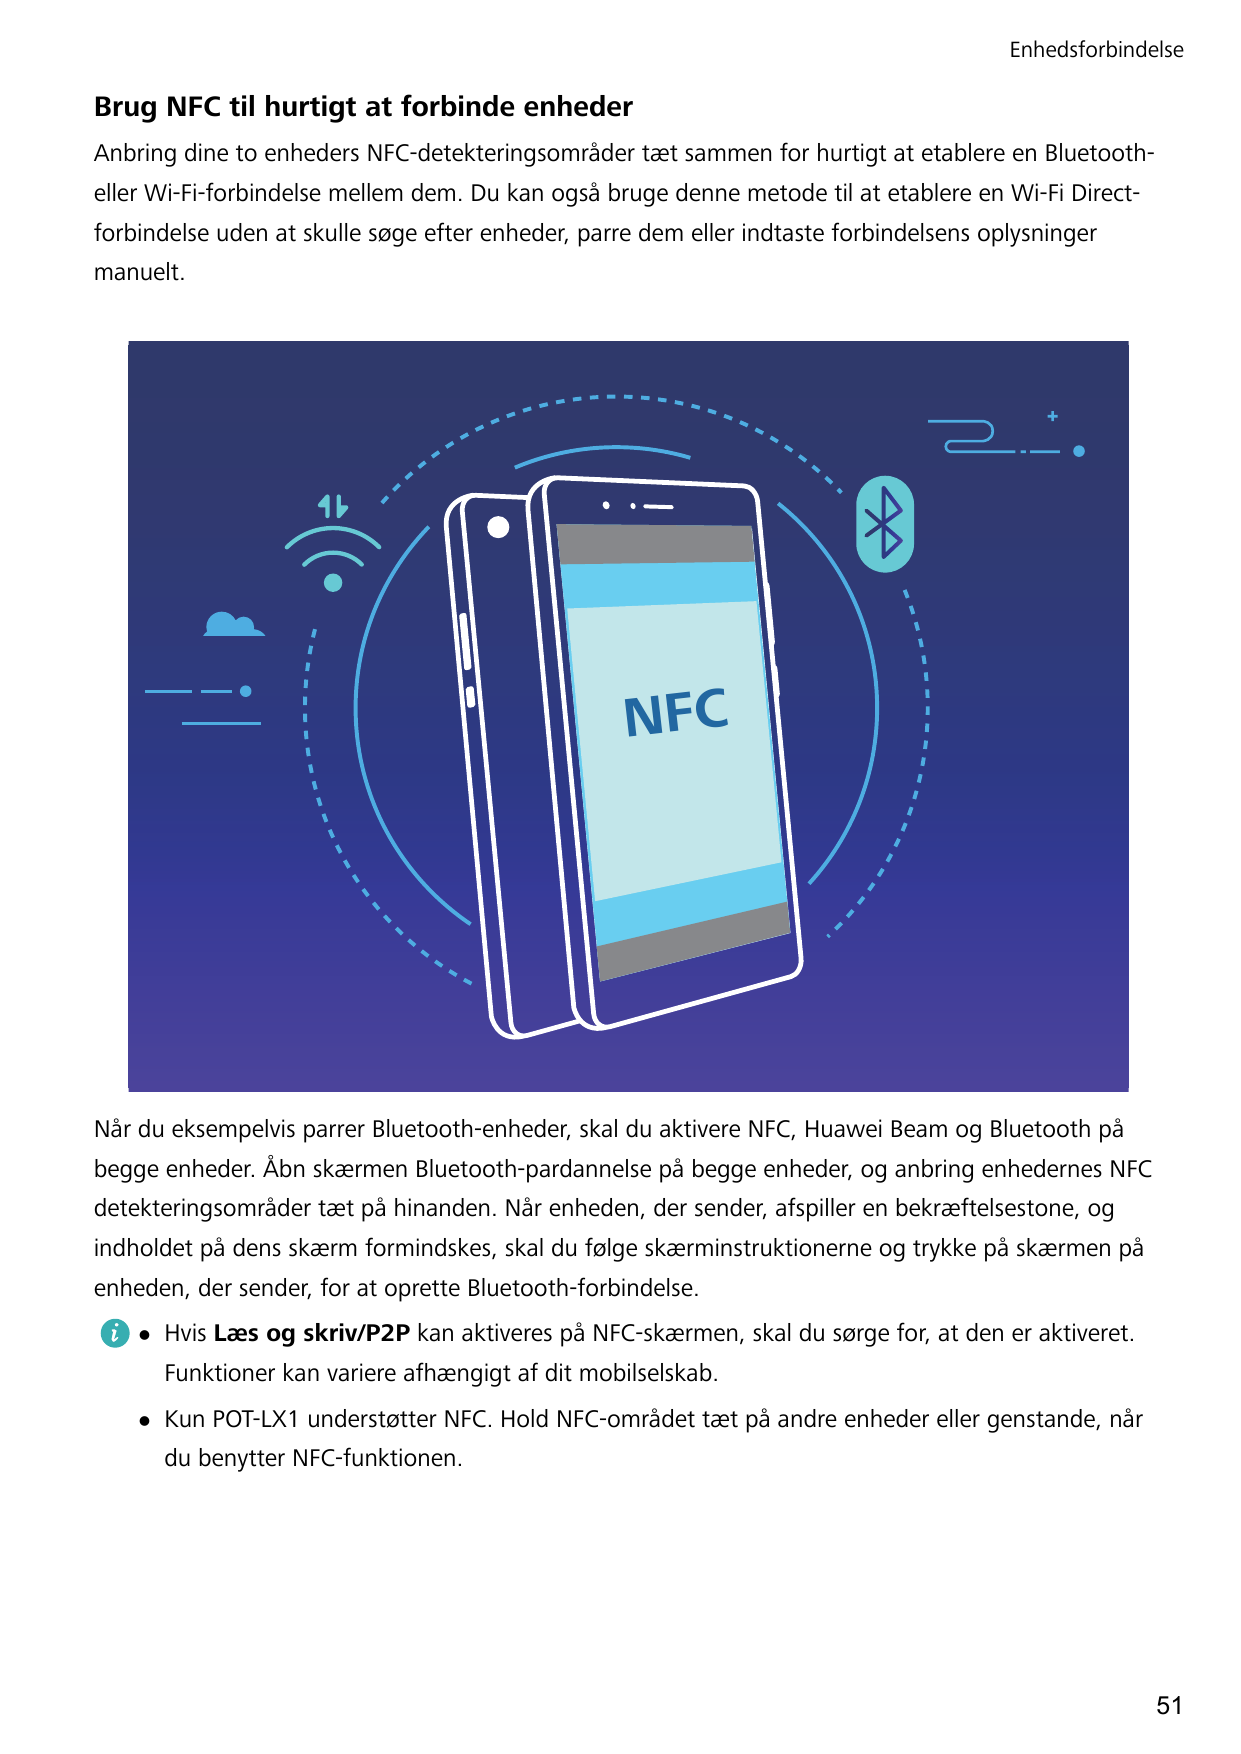 EnhedsforbindelseBrug NFC til hurtigt at forbinde enhederAnbring dine to enheders NFC-detekteringsområder tæt sammen for hurtigt